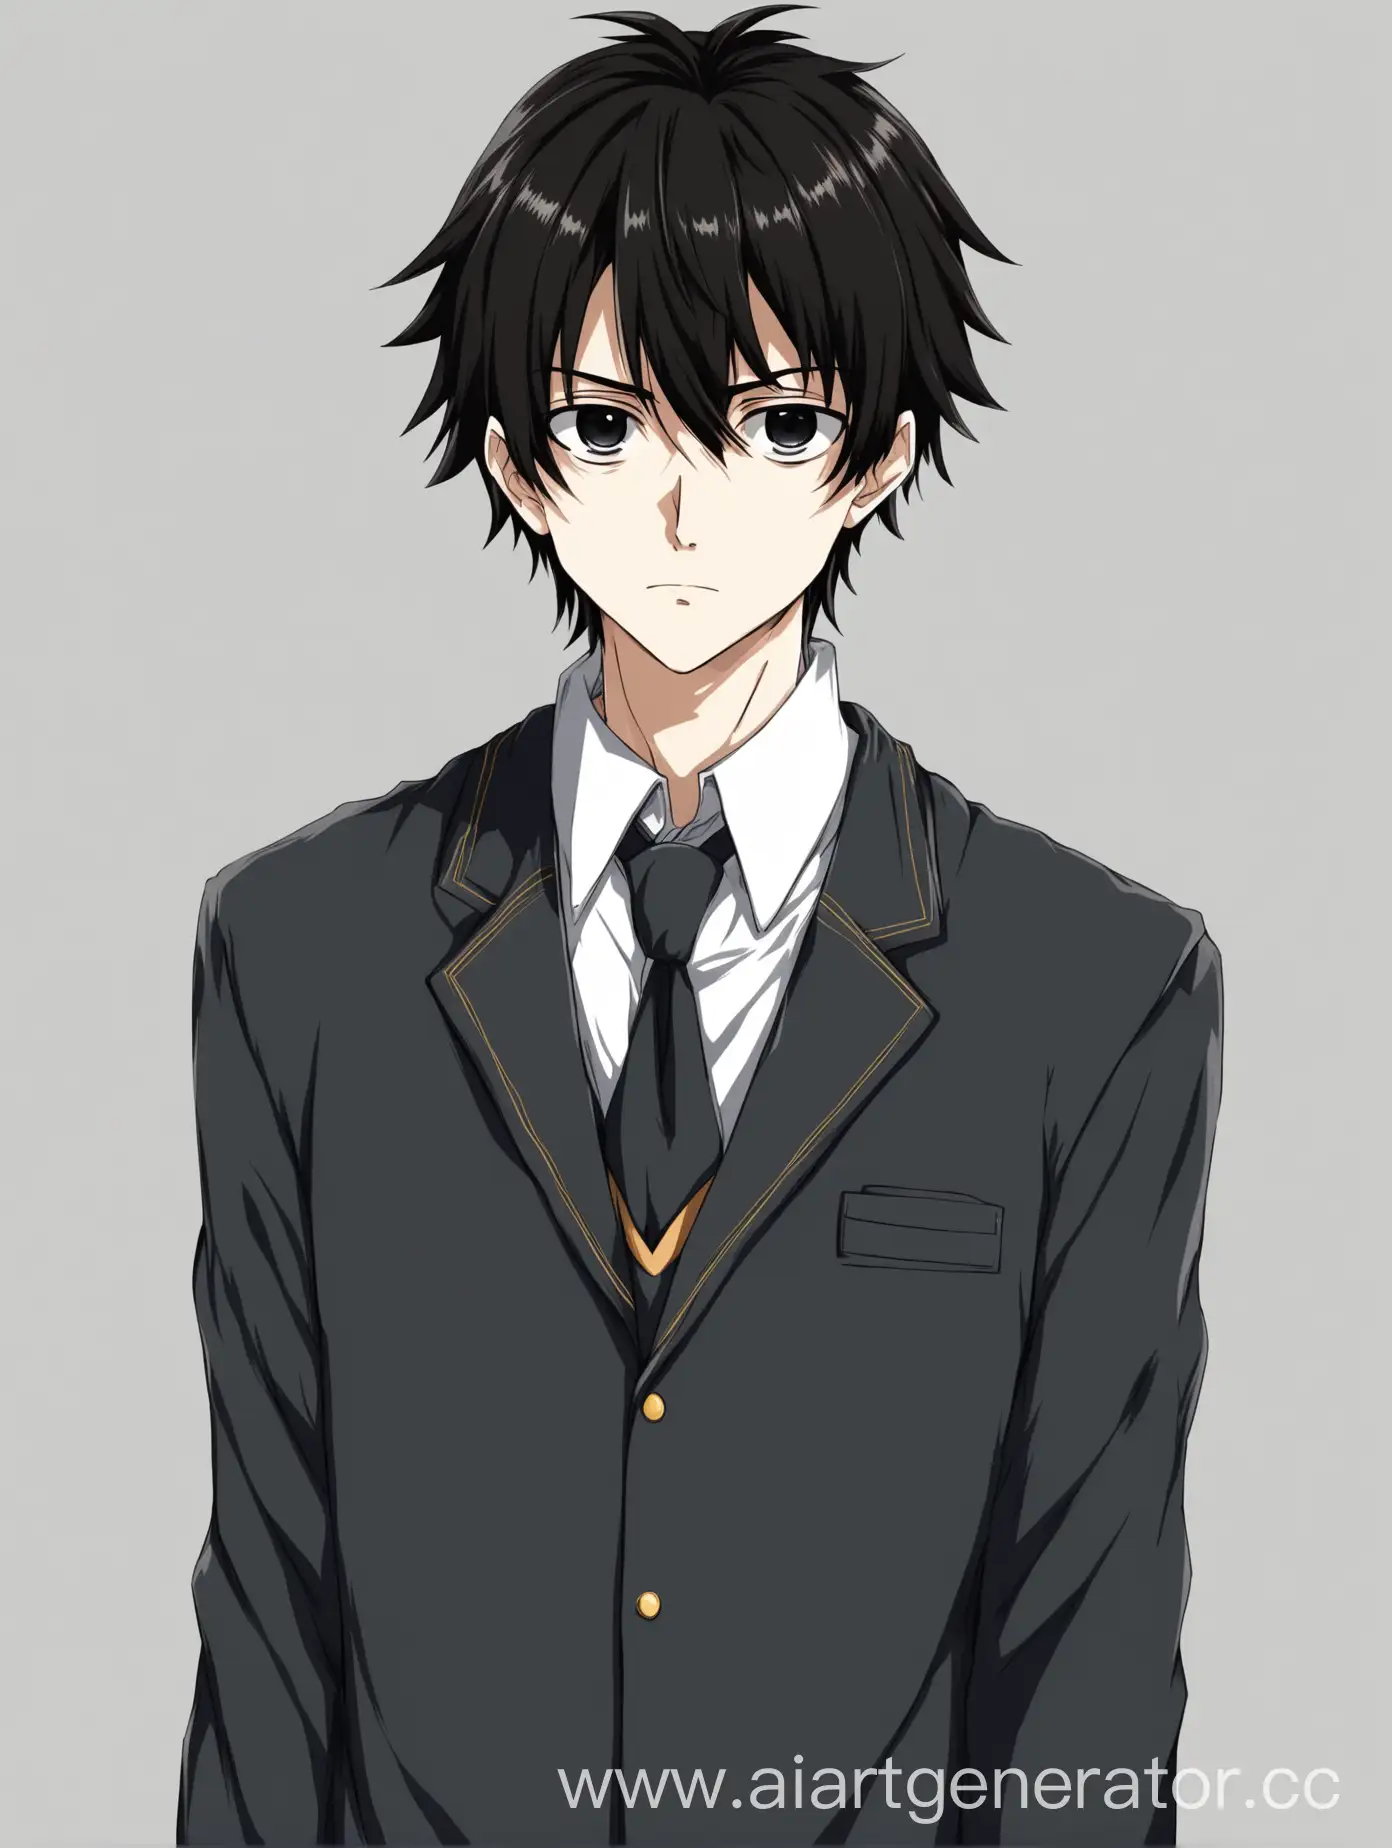 Аниме парень в школьной форме, с черными глазами и темными волосами. Изолированный объект на белом фоне